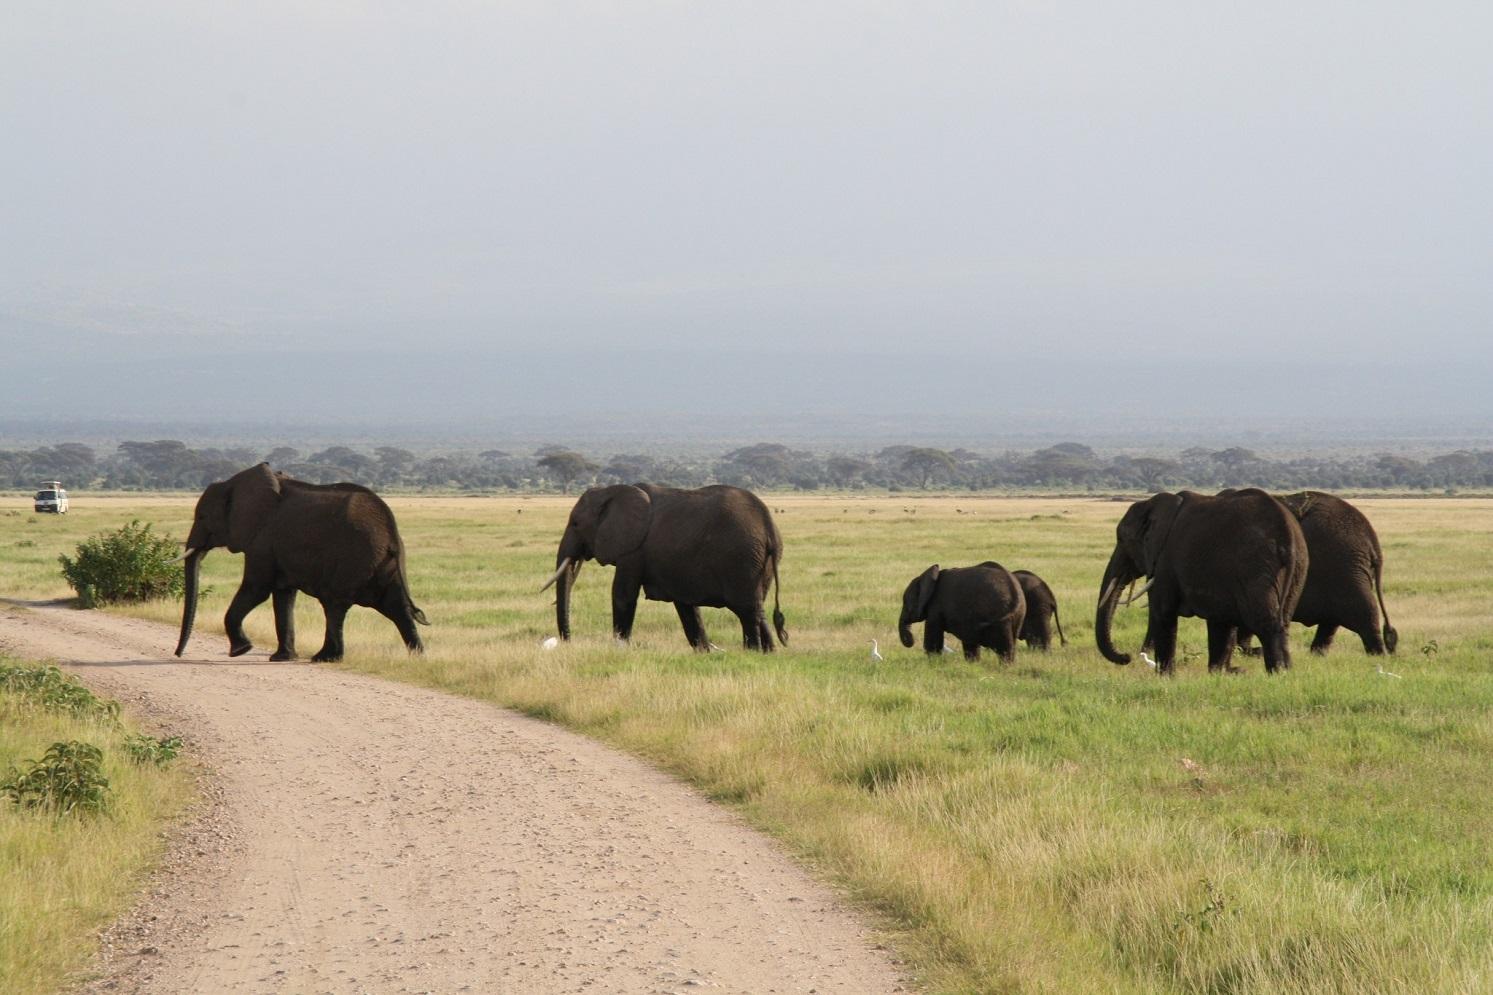 Amboseli Herd of Elephants, Mount Kilimanjaro,Kenya Adventure Safaris, Active Adventures, YHA Kenya Travel Epic Adventures, Epic Wildlife Safari.